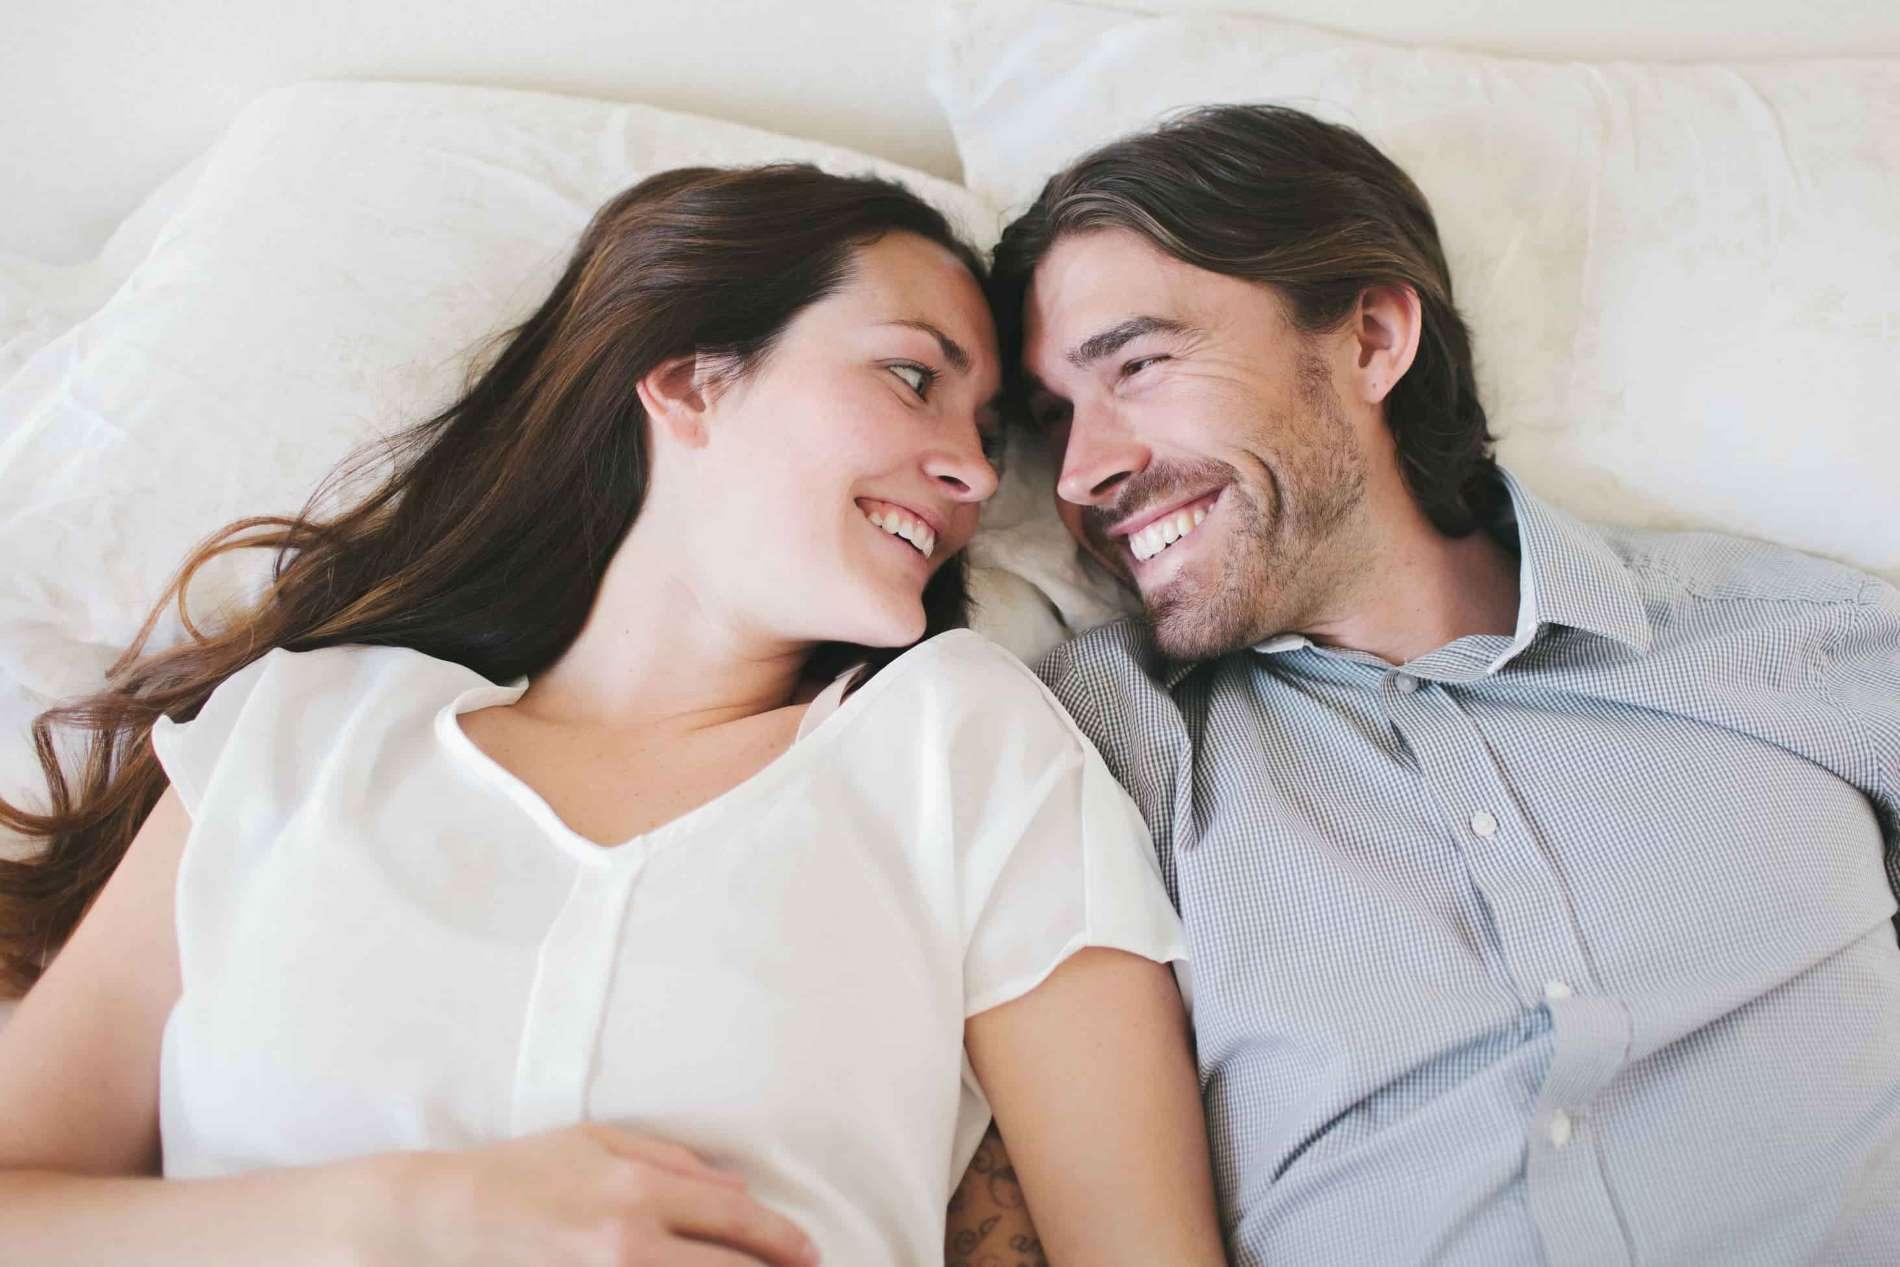 Check Up 35: Mann und Frau liegen nebeneinander im Bett und lachen sich an.